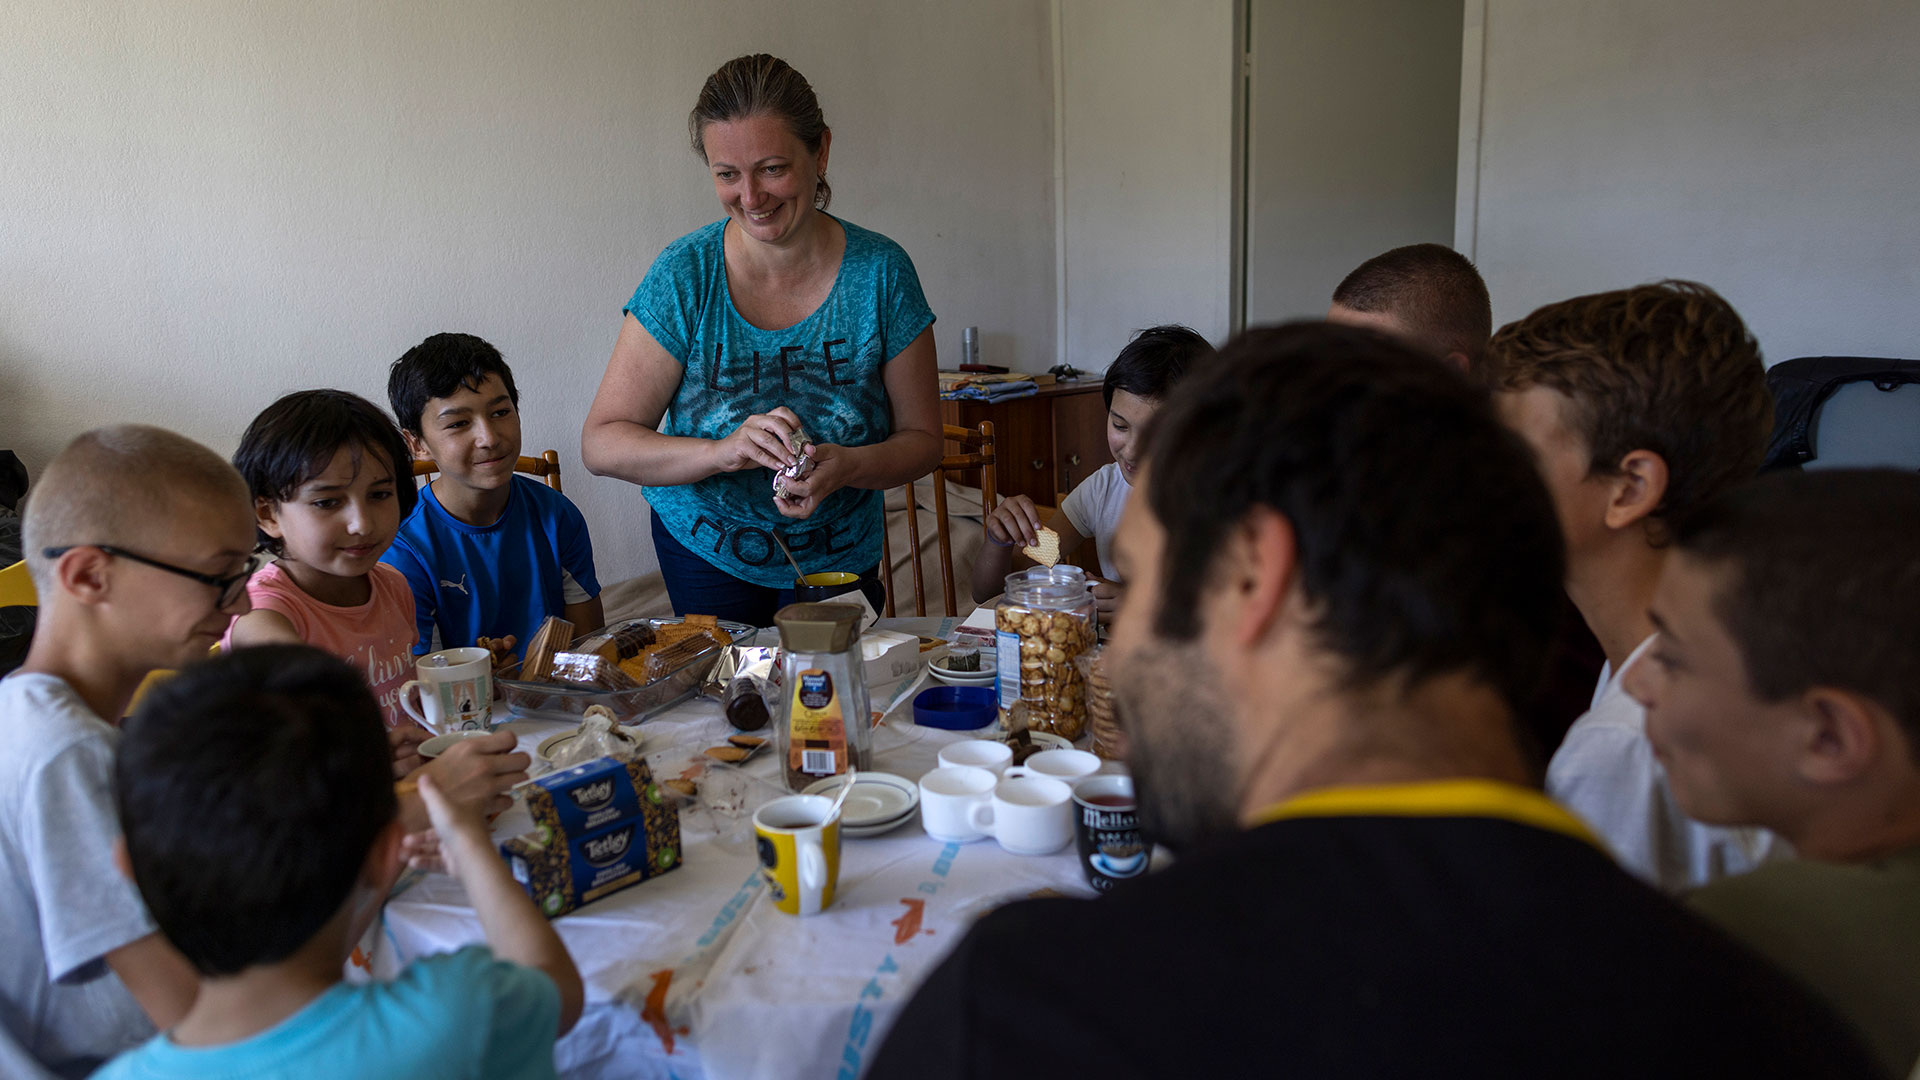 Olga Lopatkina, en el centro, sirve un bocadillo a su familia, en Loue, al oeste de Francia (AP Photo/Jeremias Gonzalez)